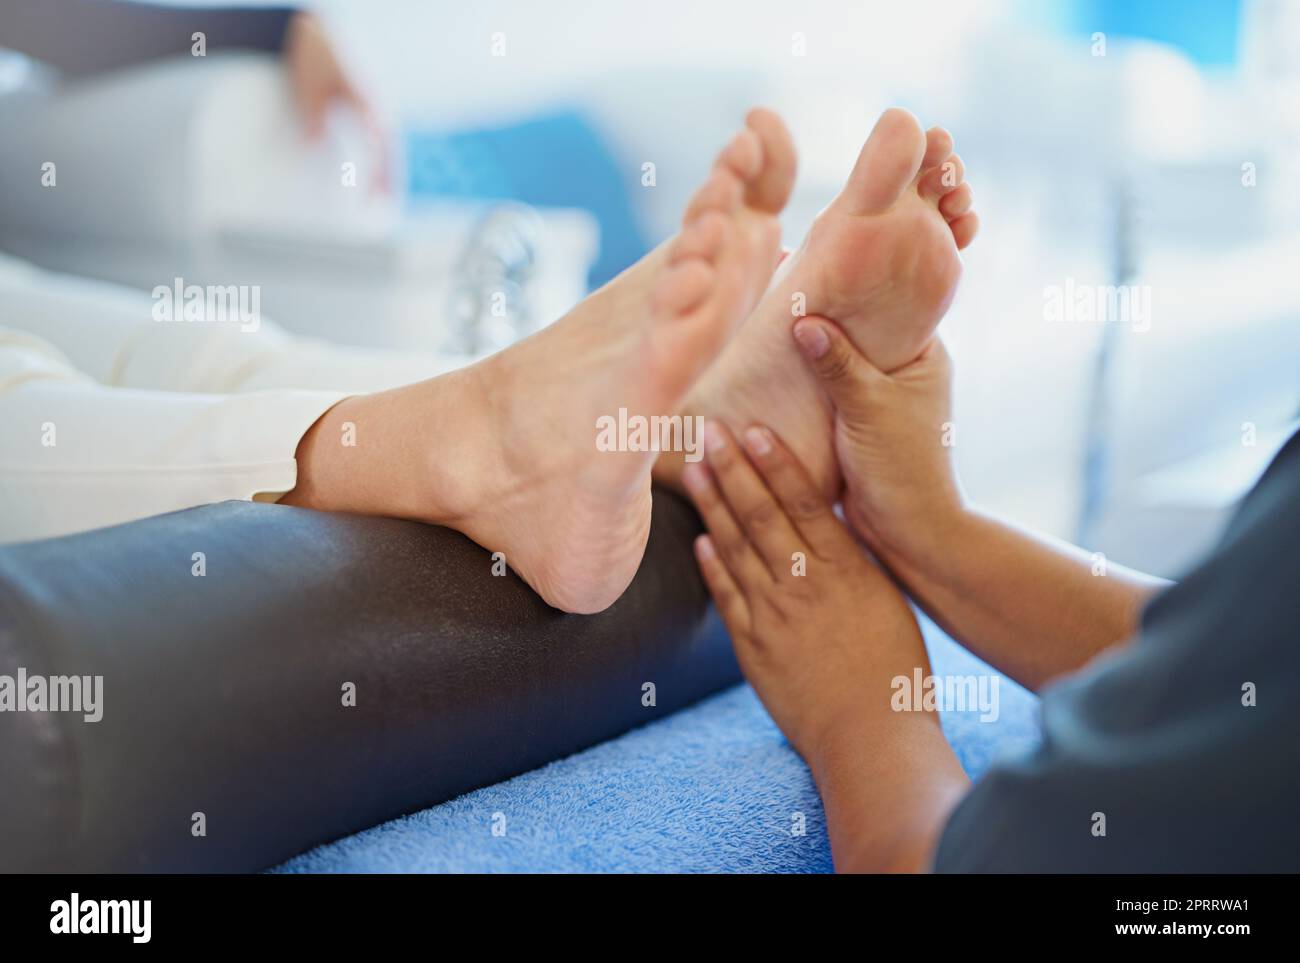 Les pédicures sont si relaxantes. Une femme a ses pieds massés dans un spa de beauté Banque D'Images